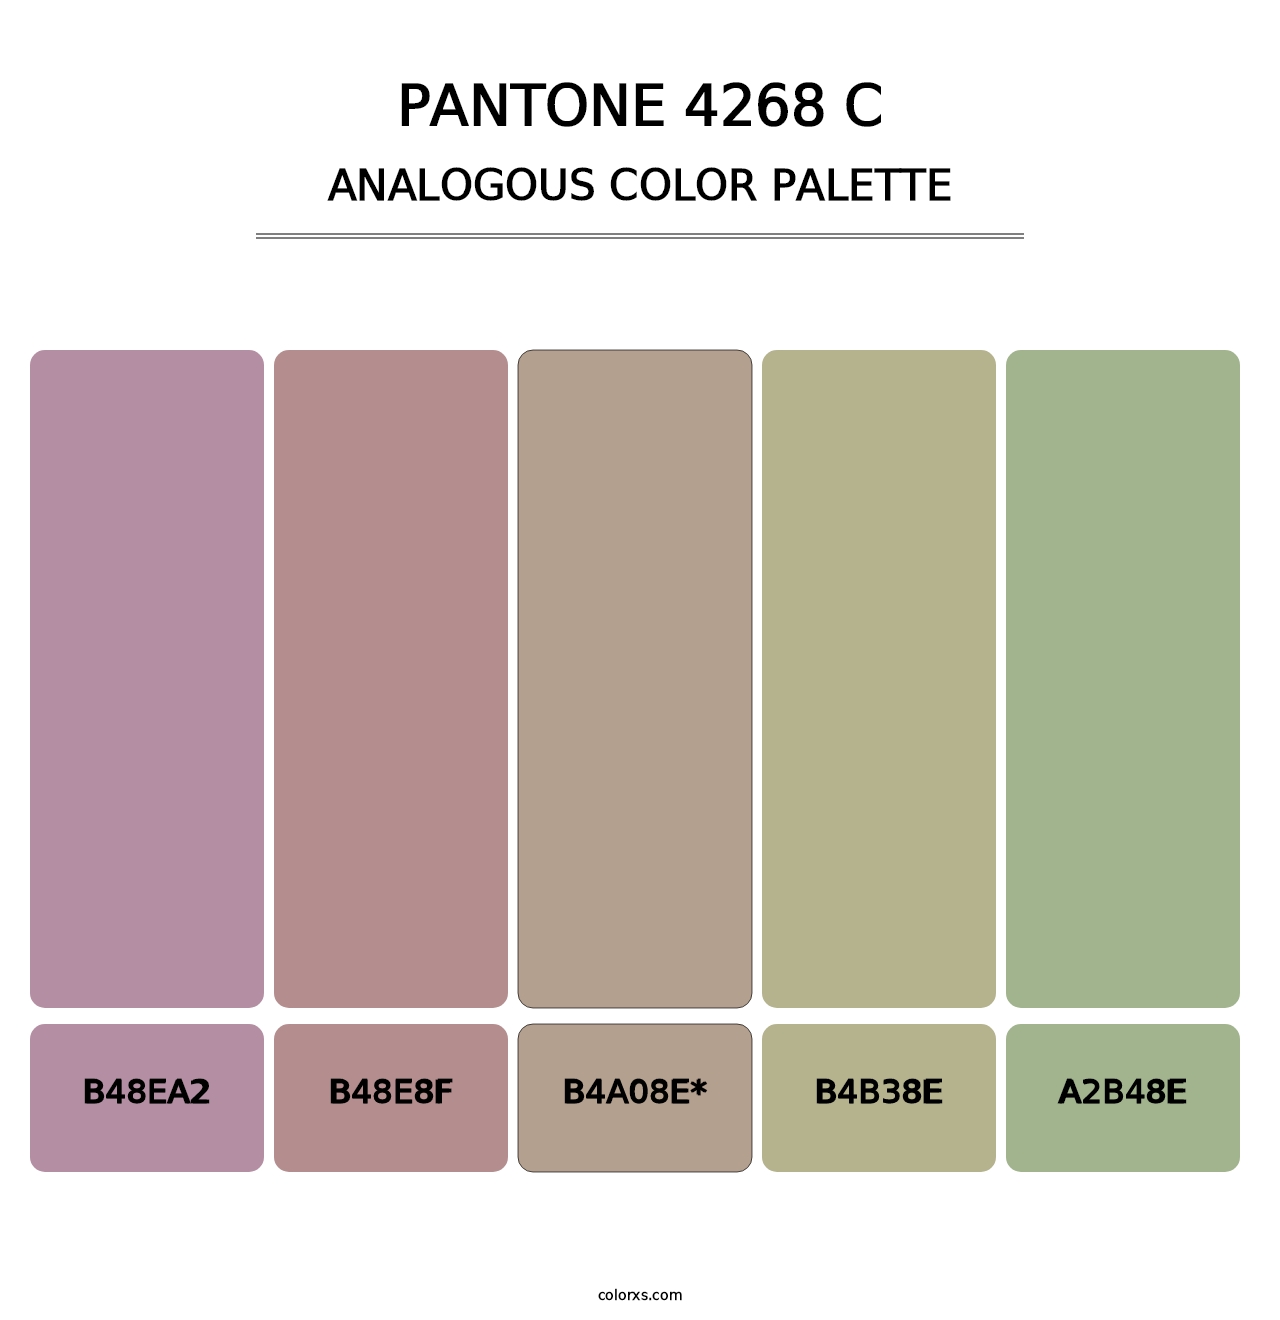 PANTONE 4268 C - Analogous Color Palette